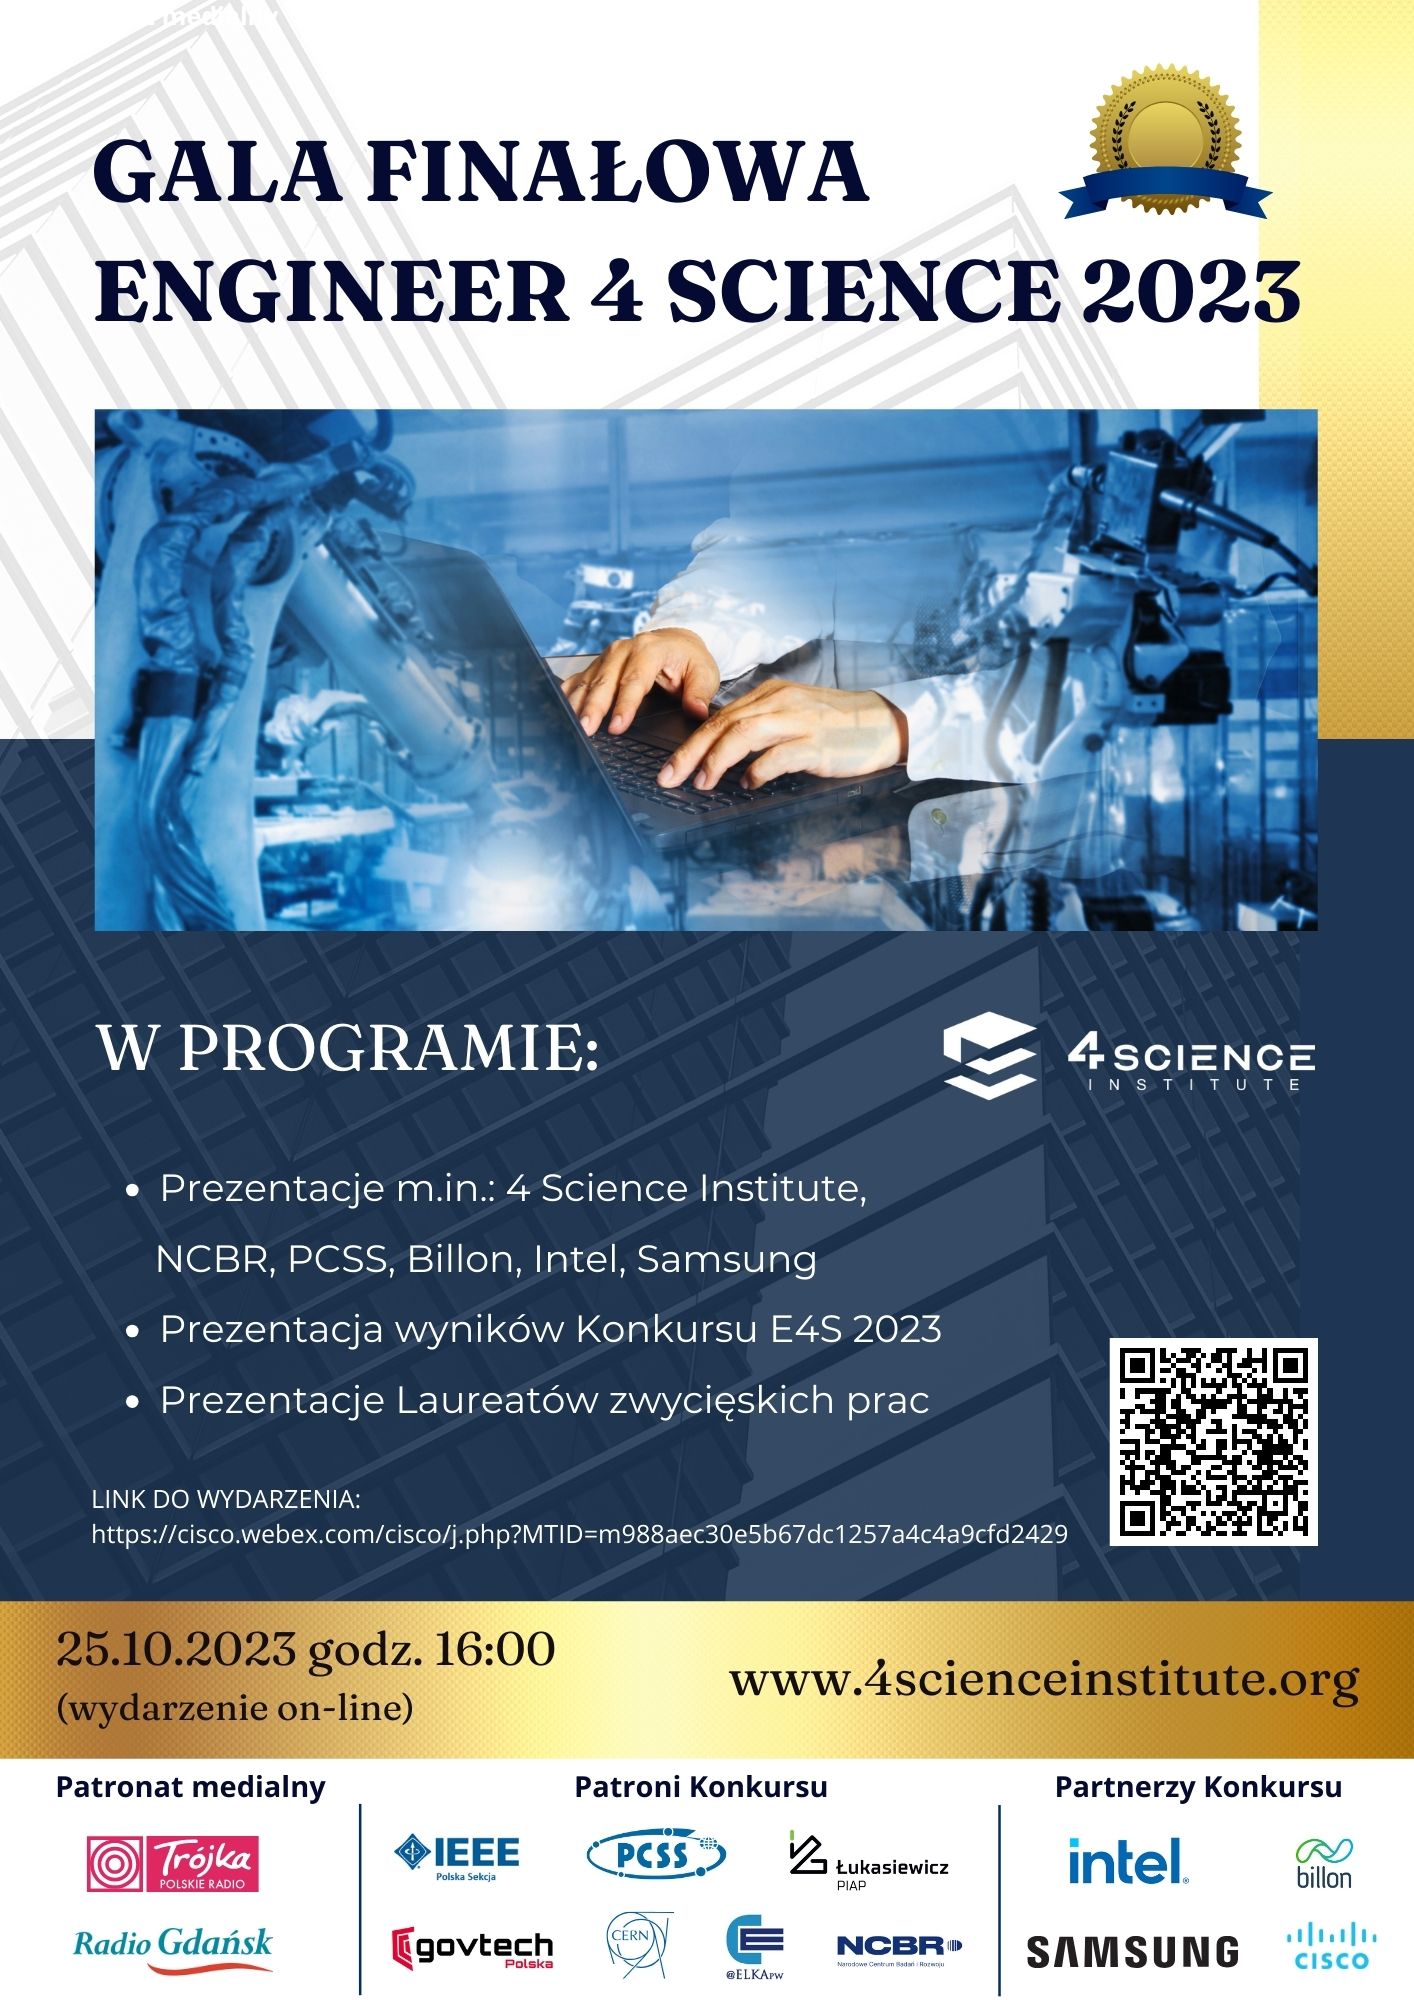 Plakat informujący o gali finałowej engineer 4 science 2023 dnia 25.10.202